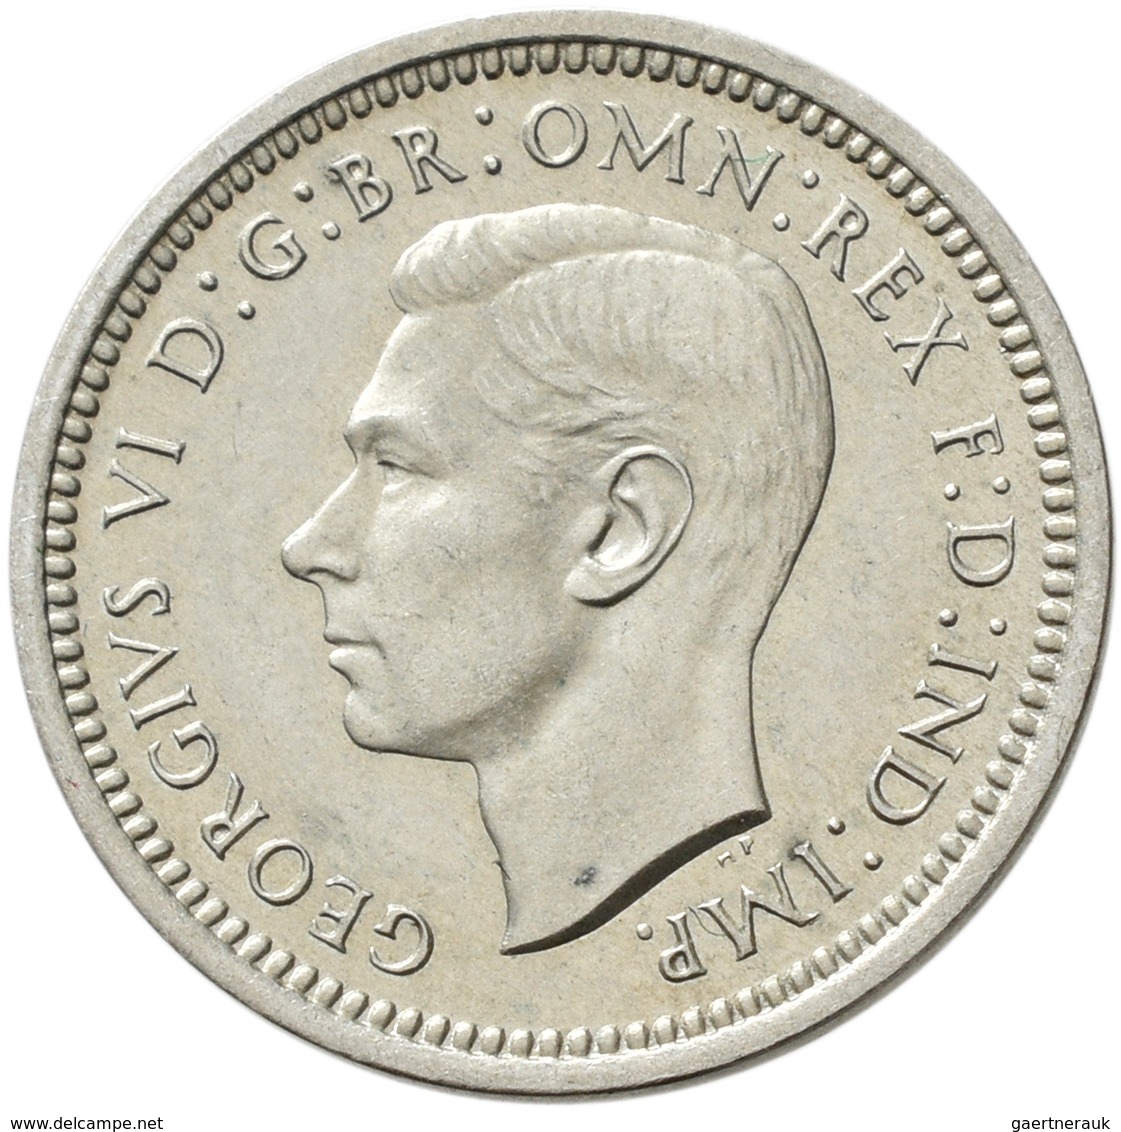 Großbritannien: Georg VI. 1936-1952: 3 x Maundy Set 1,2,3,4 Pence 1943, 1948, 1950, vorzüglich, vorz